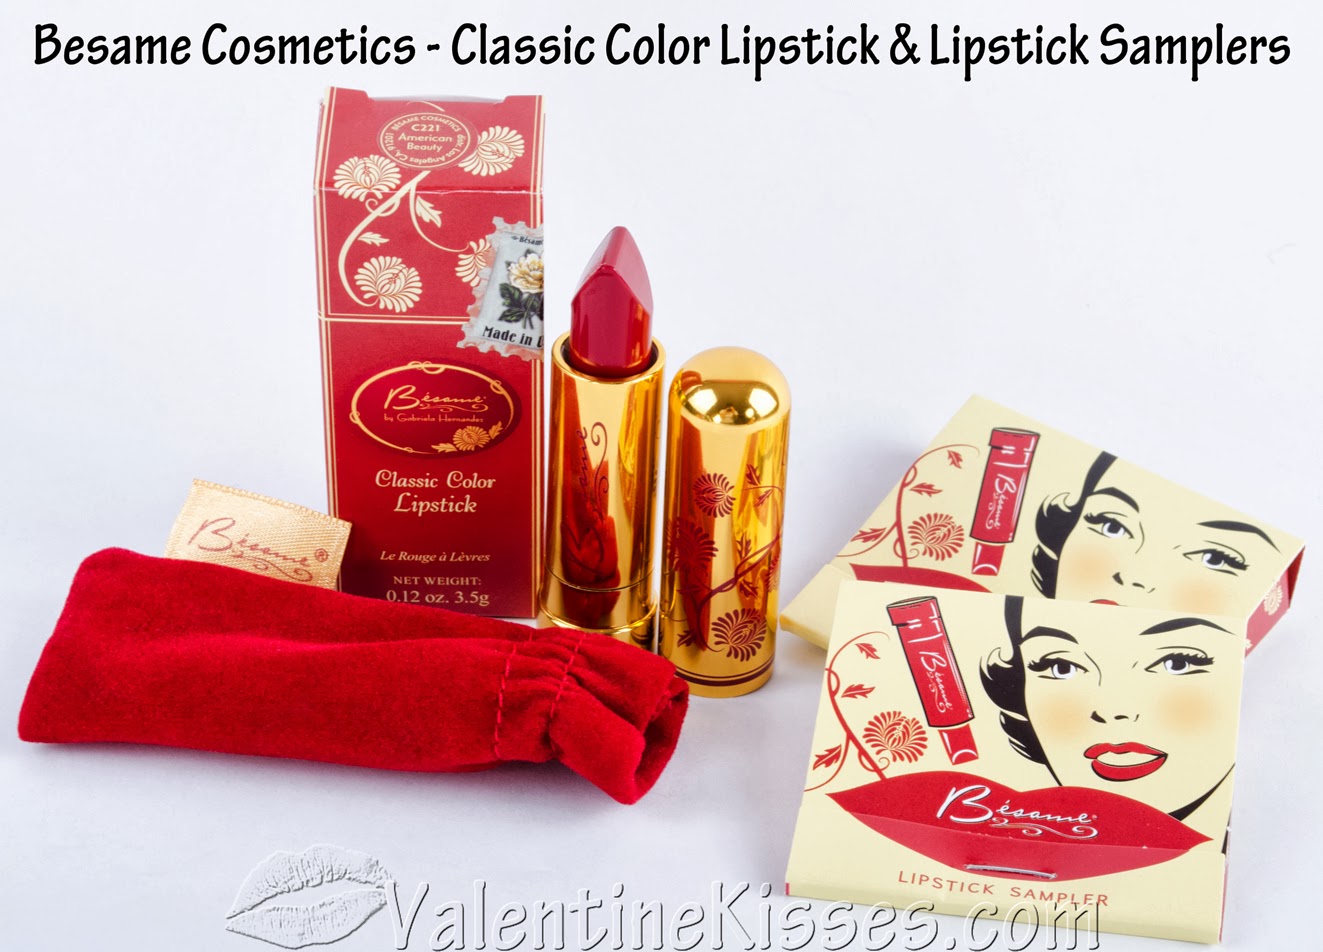 Chanel Rouge Allure Velvet - # 34 La Raffinee 3.5g/0.12oz – Fresh Beauty  Co. USA